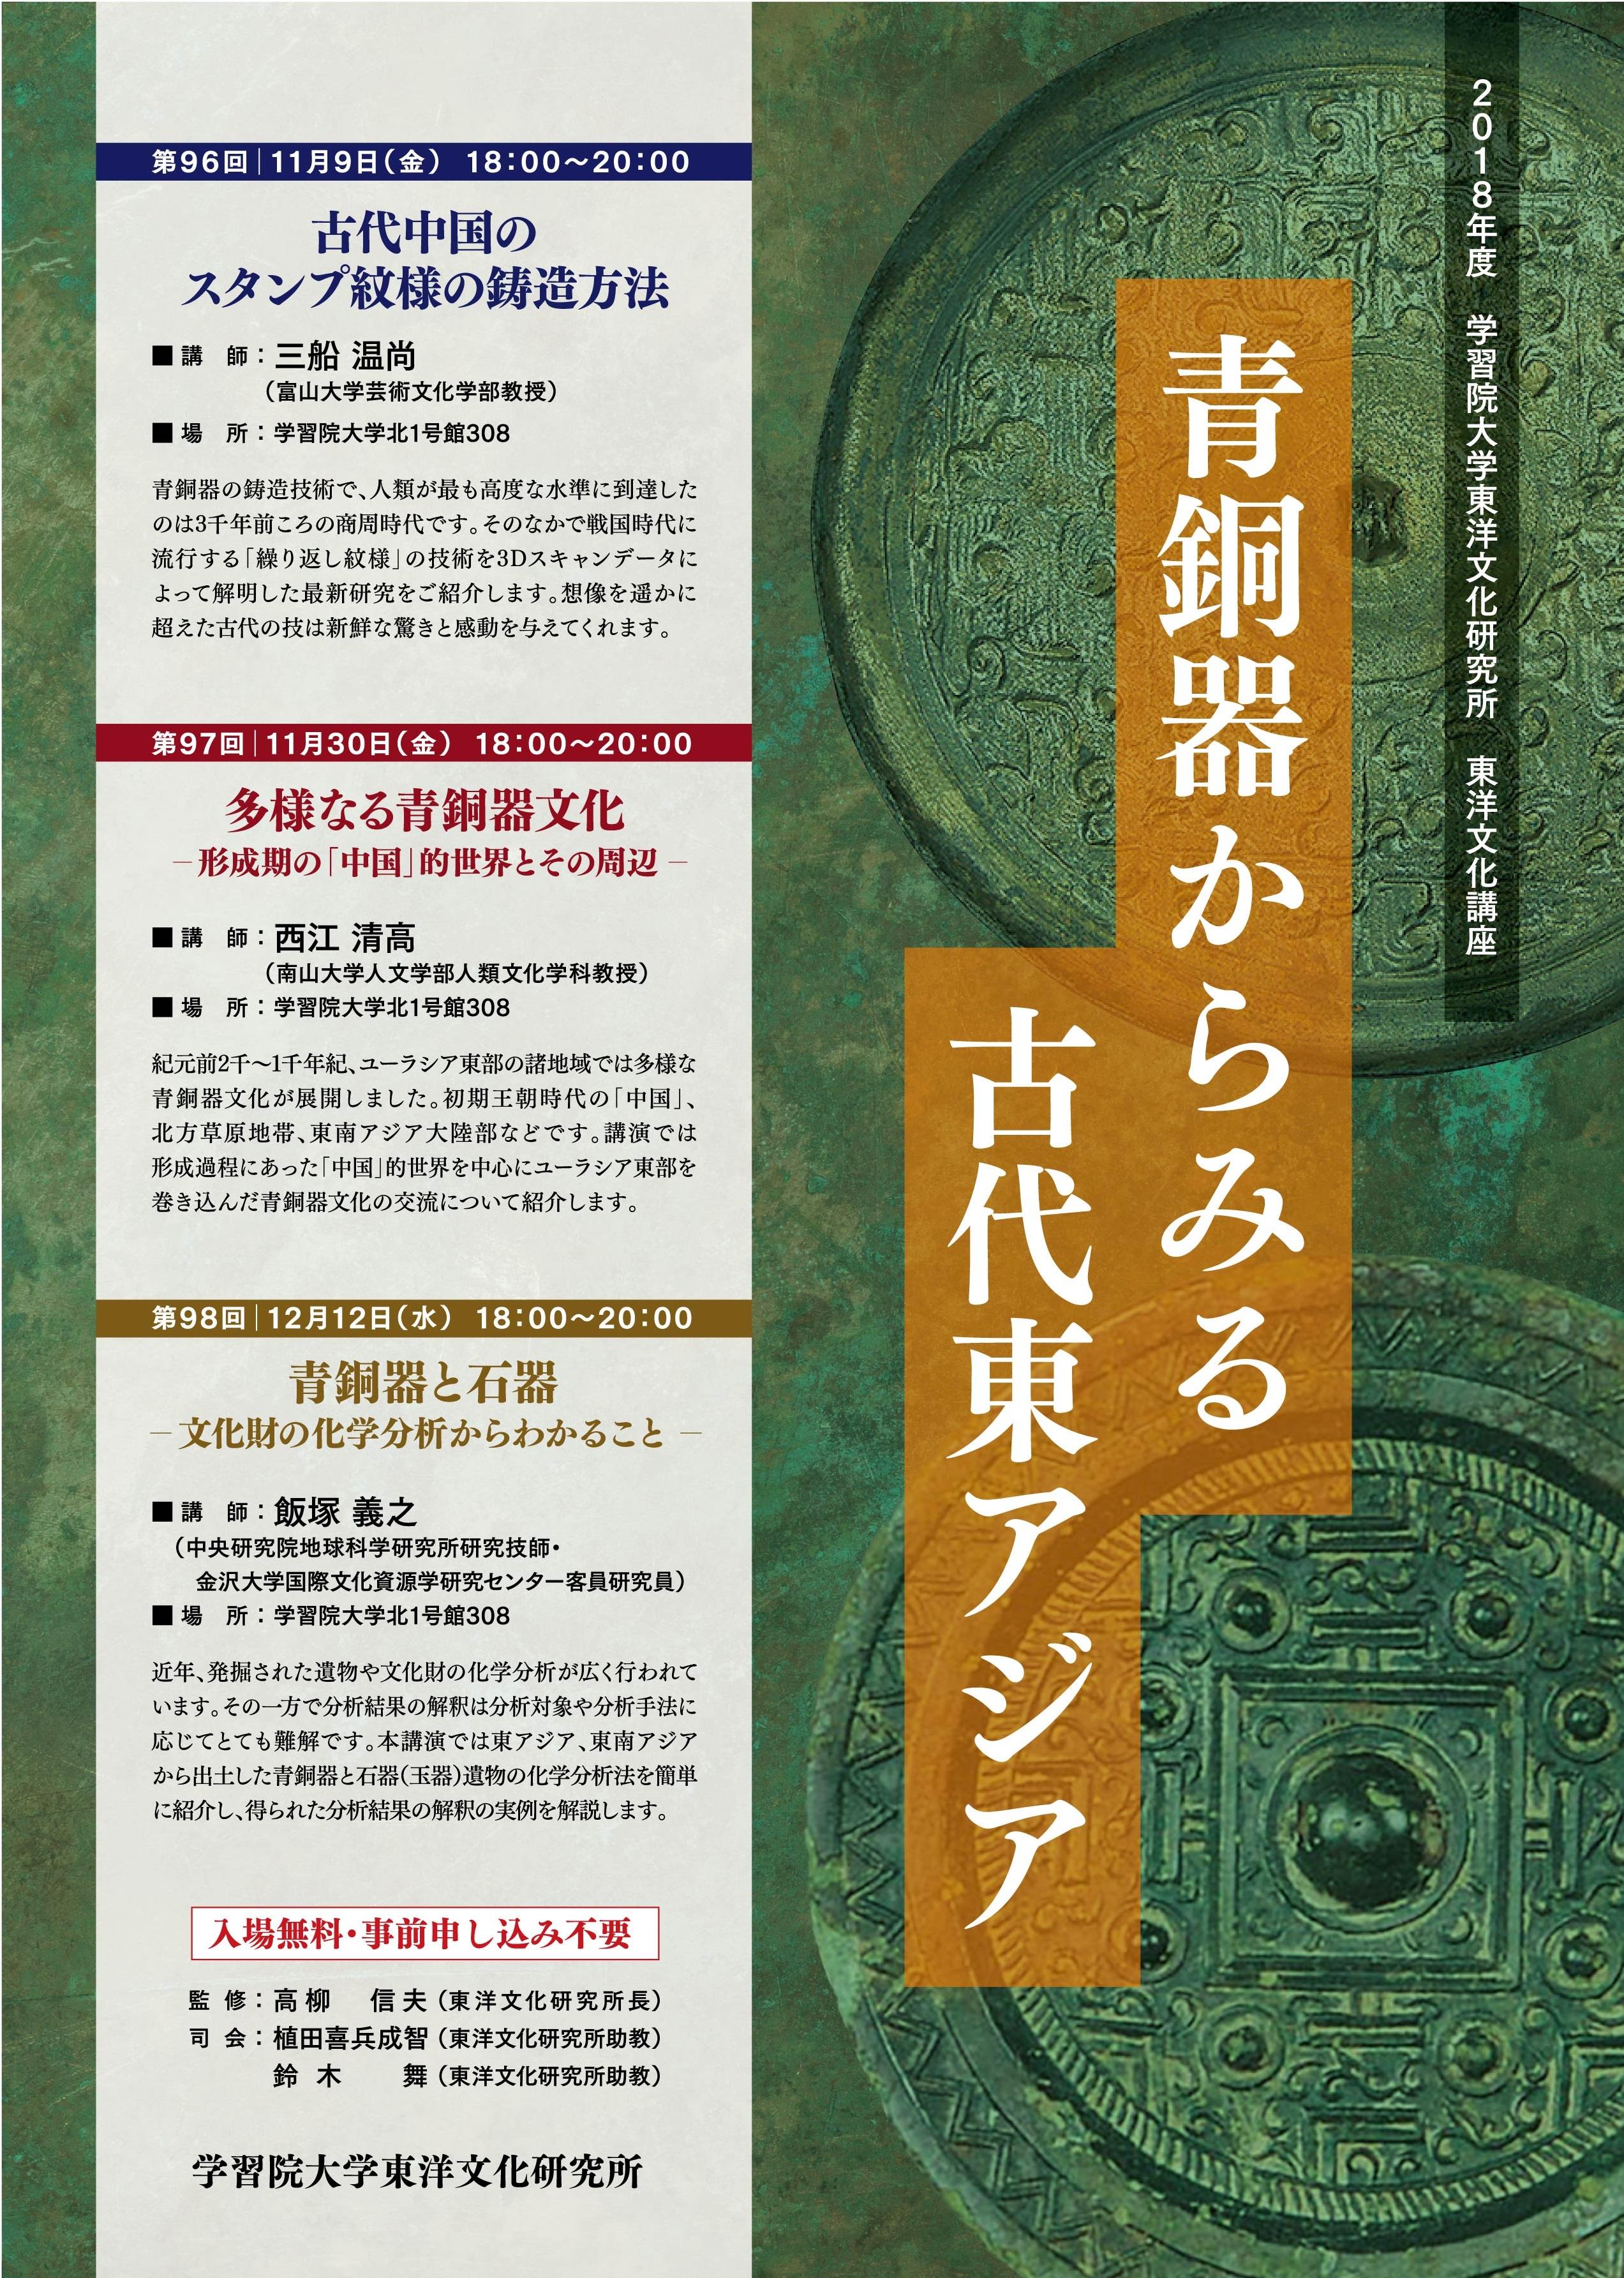 学習院大学が東洋文化講座シリーズ「青銅器からみる古代東アジア」を開催（全3回）